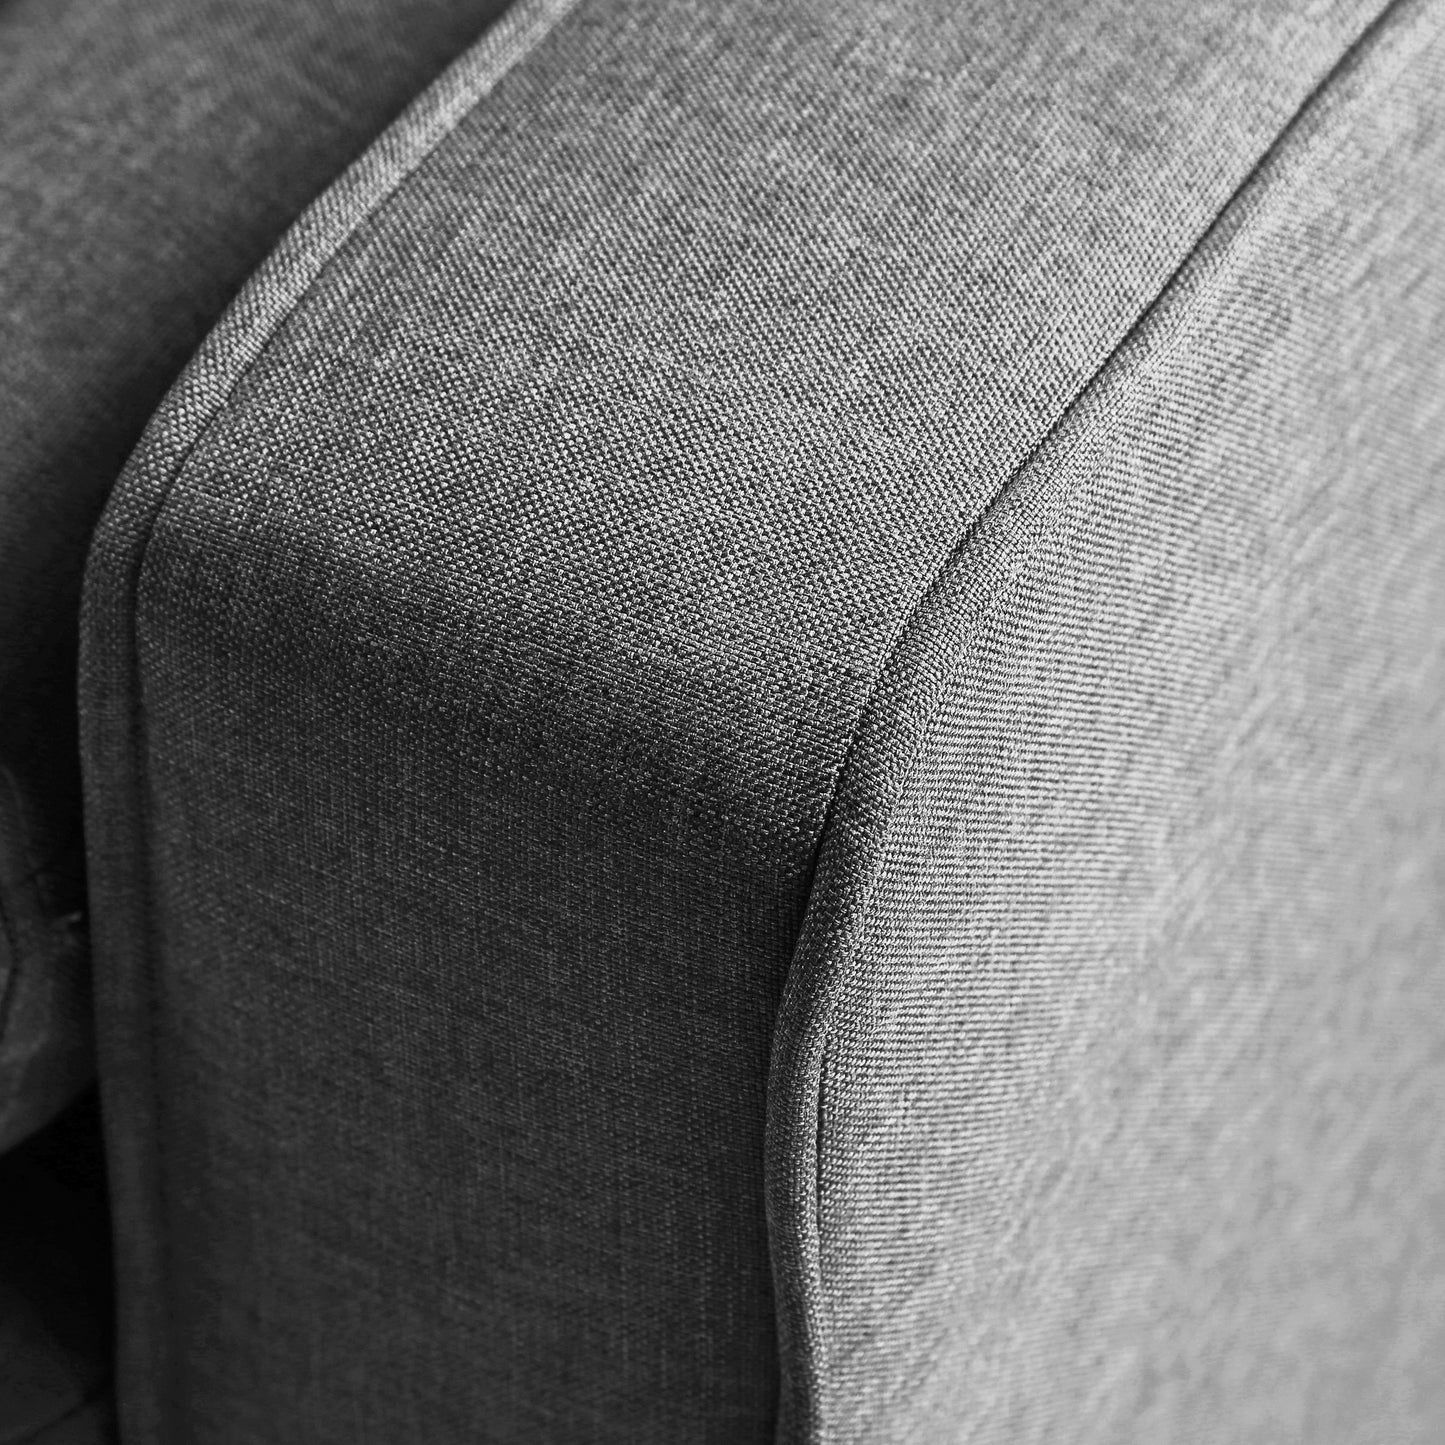 Sofa Square arms sofa